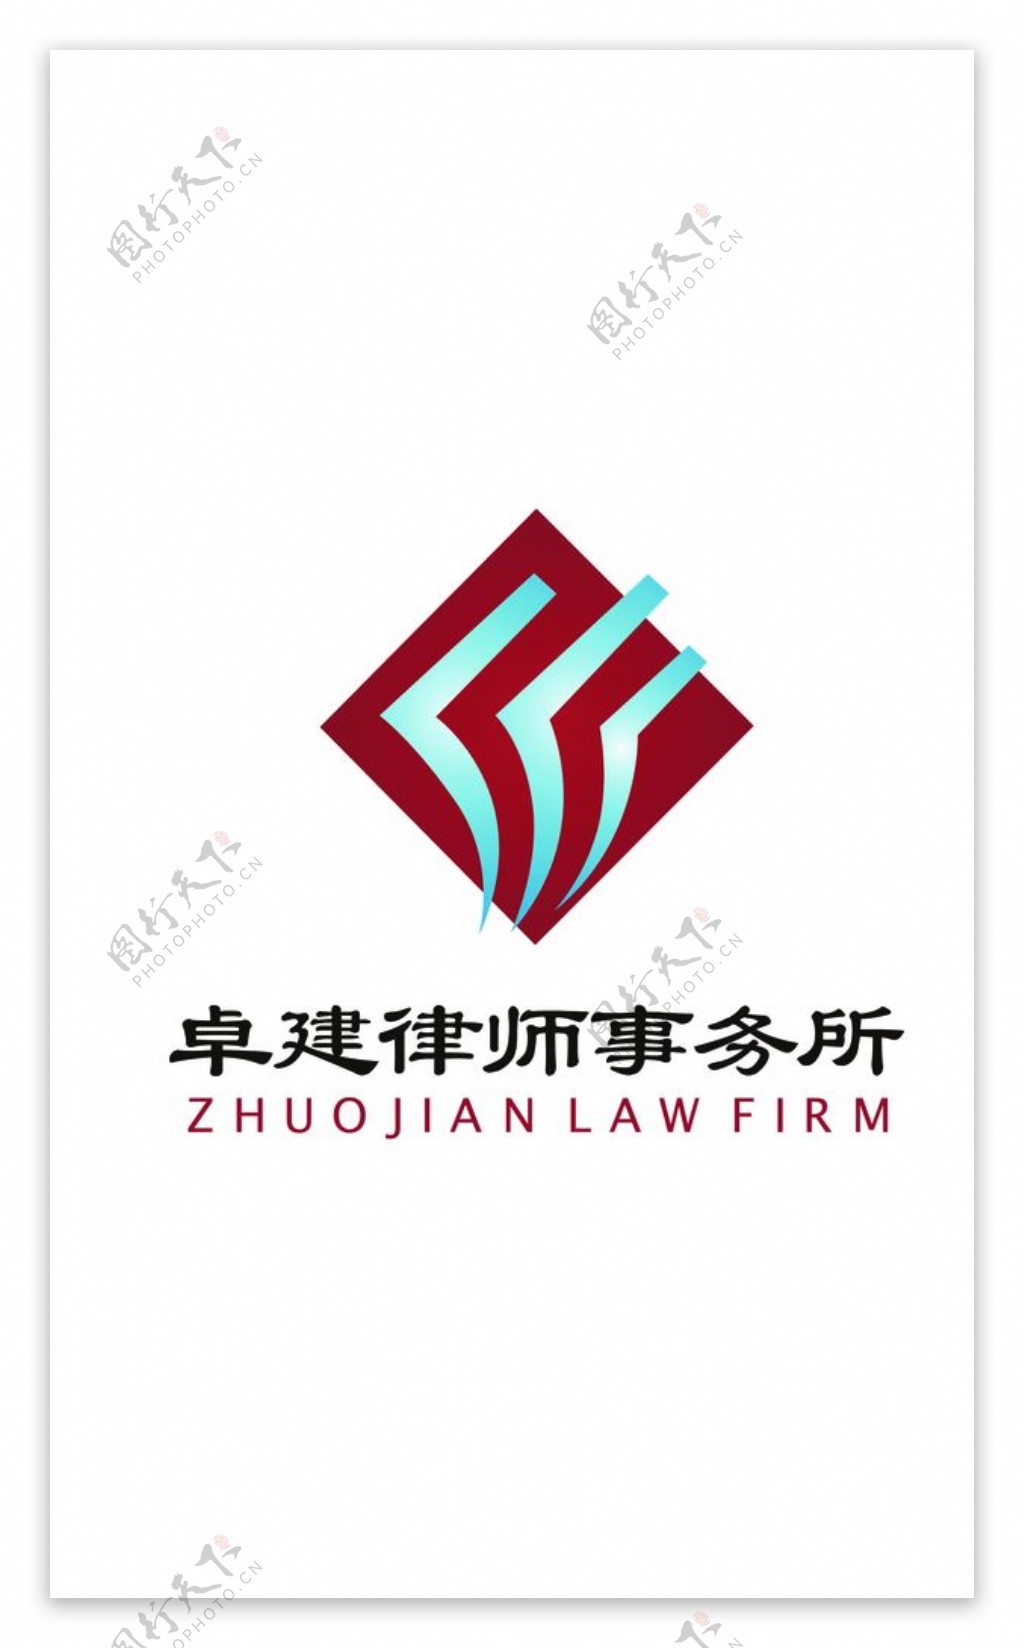 卓建律师事务所logo图片